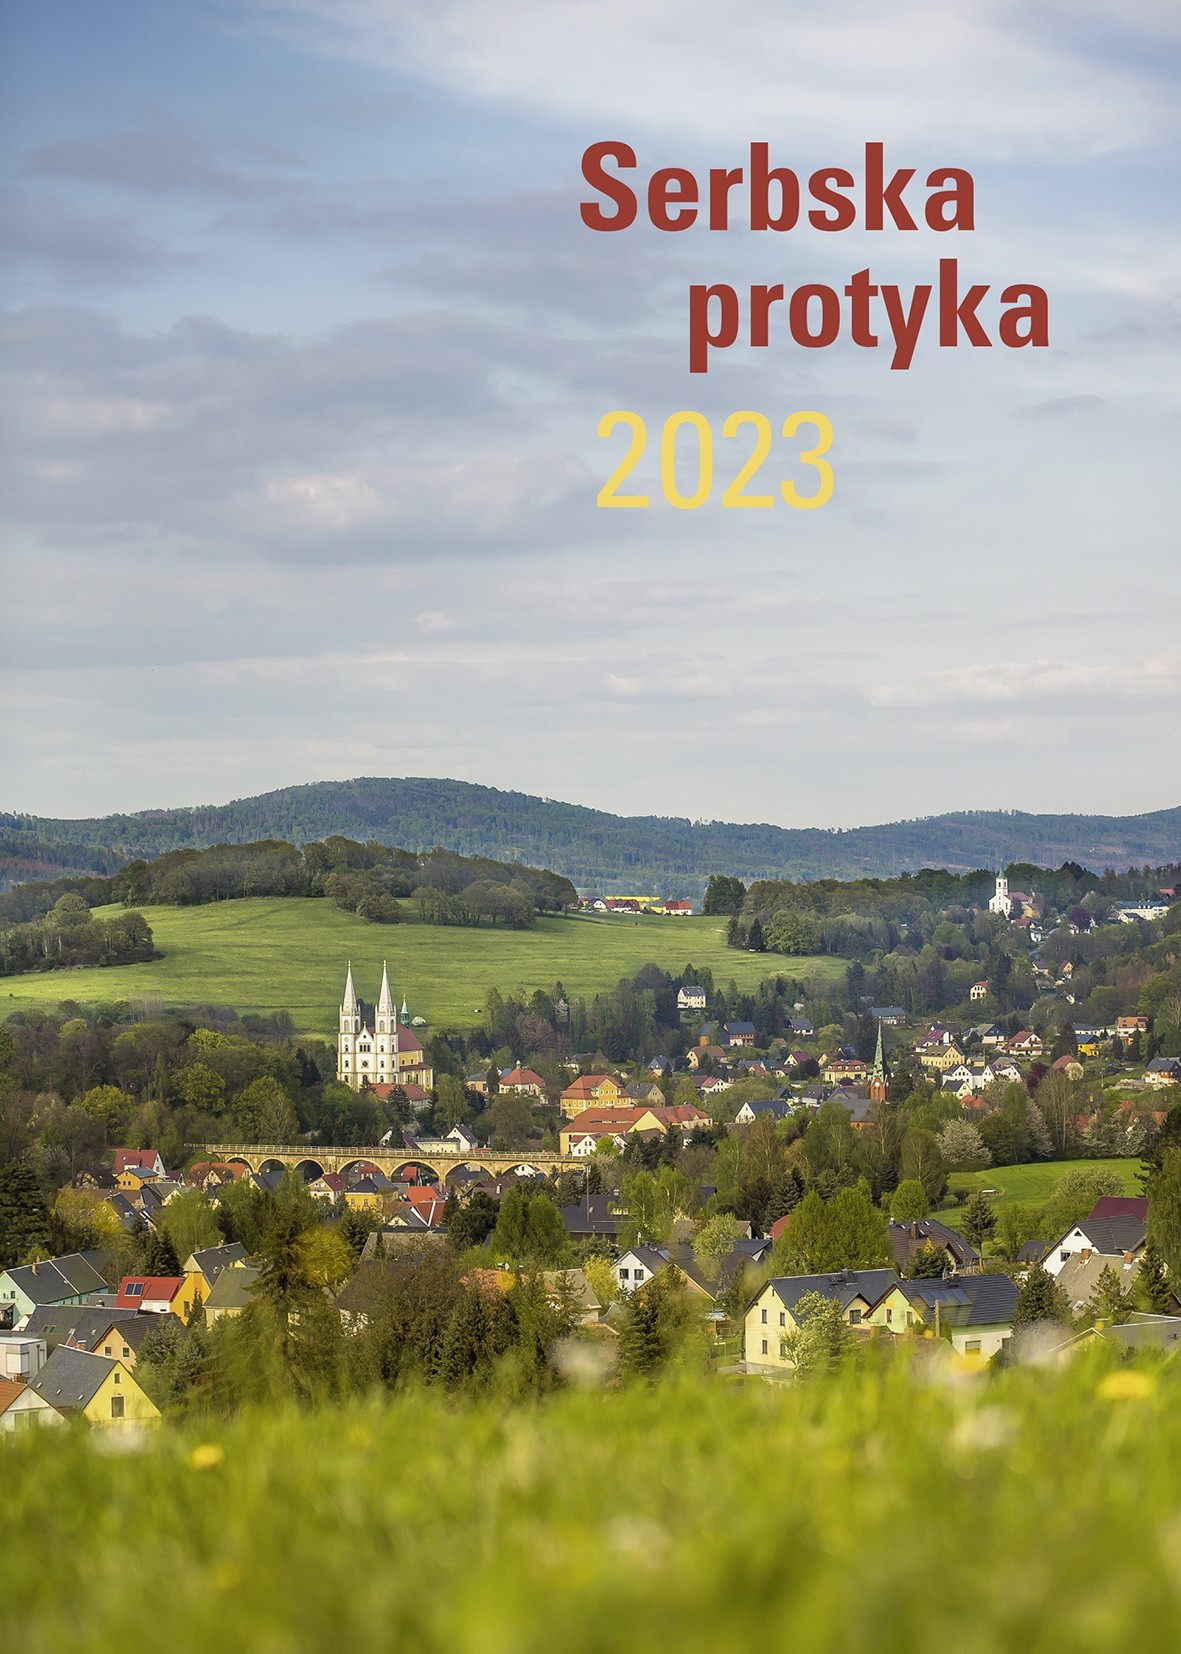 Serbska protyka 2023